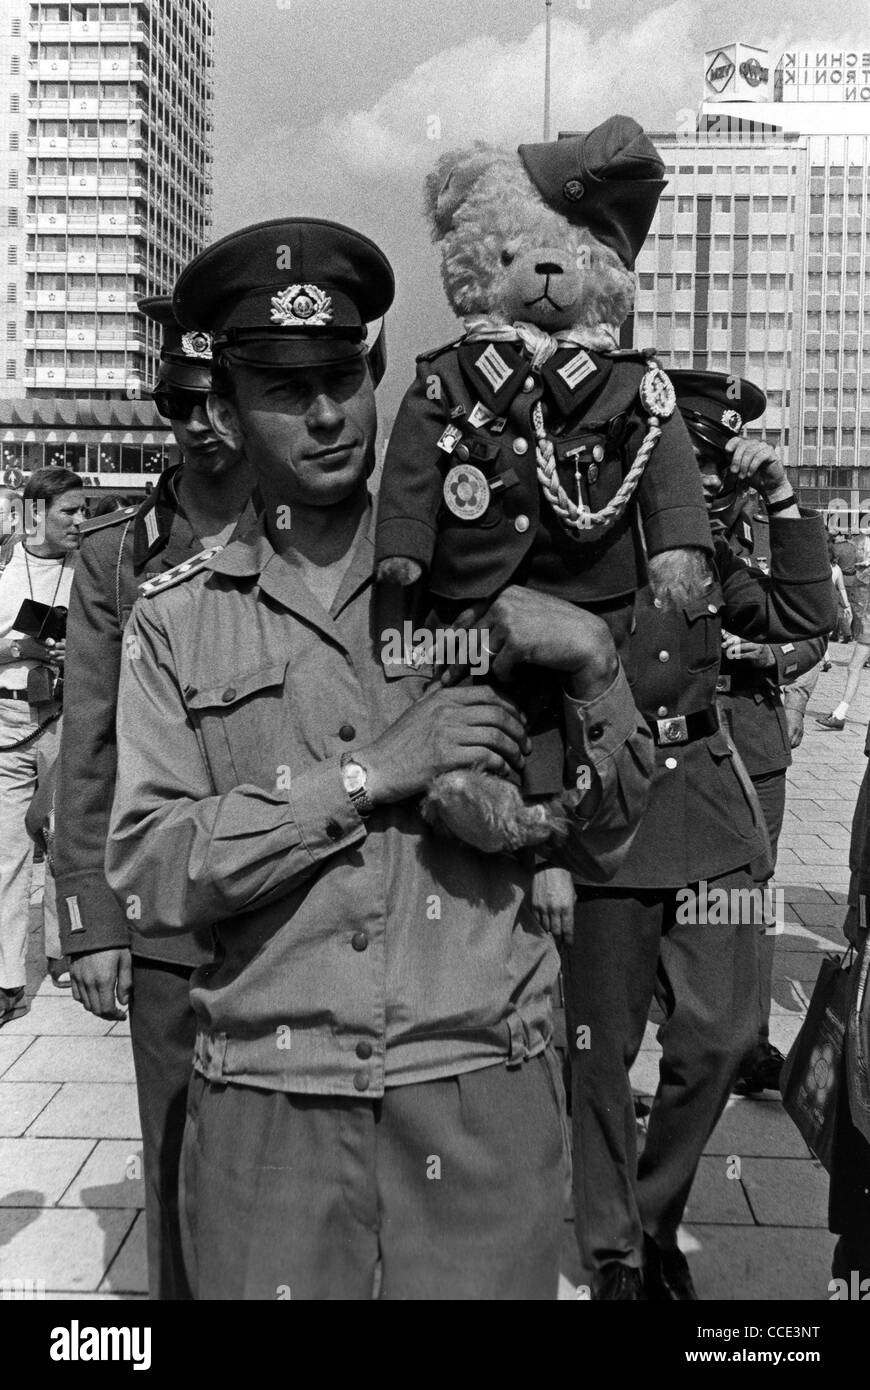 Soldaten der nationalen Volksarmee mit einem Teddy Bär in Uniform in Ost-Berlin. Stockfoto